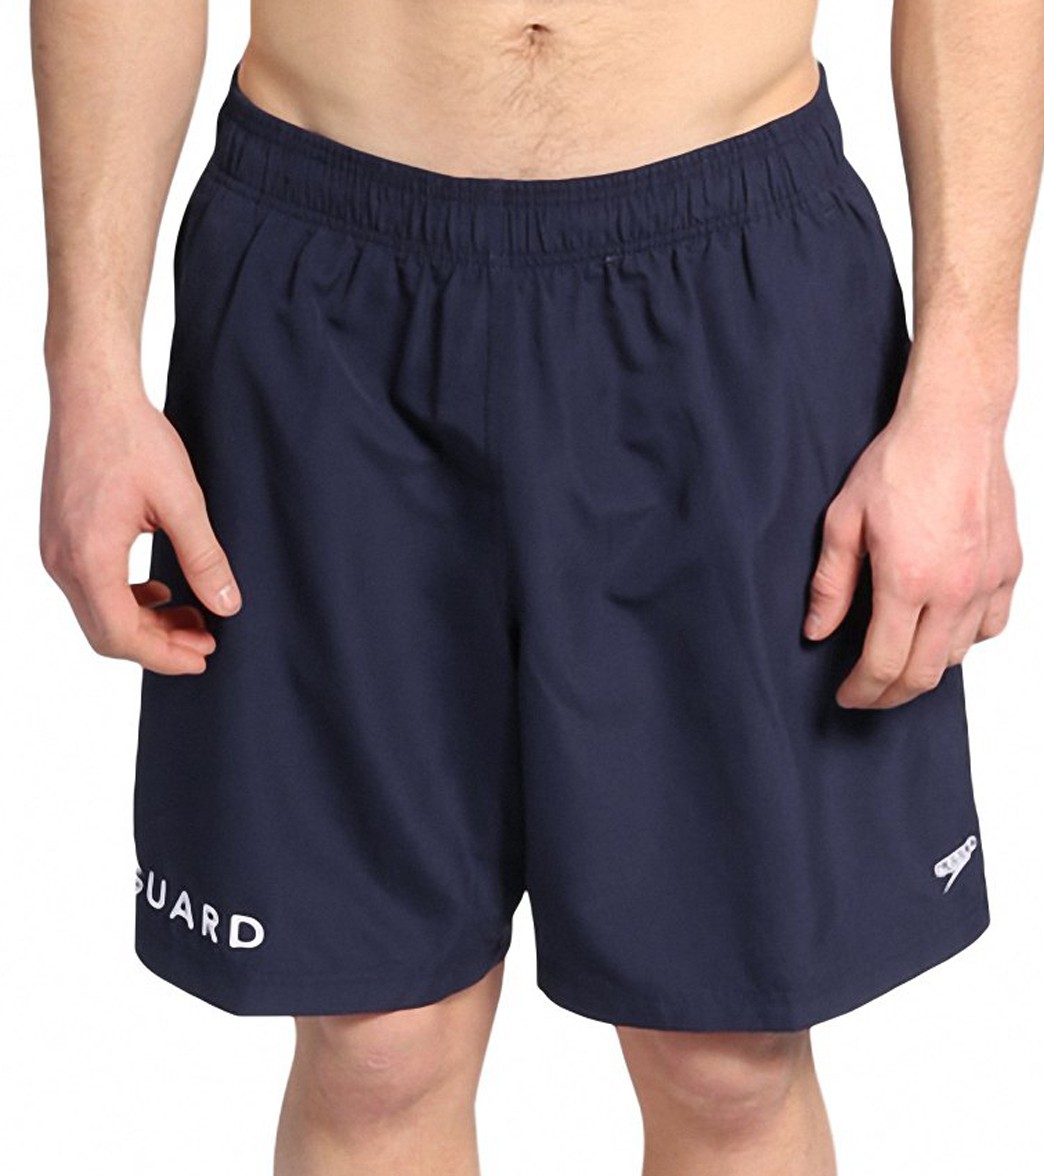 speedo water shorts